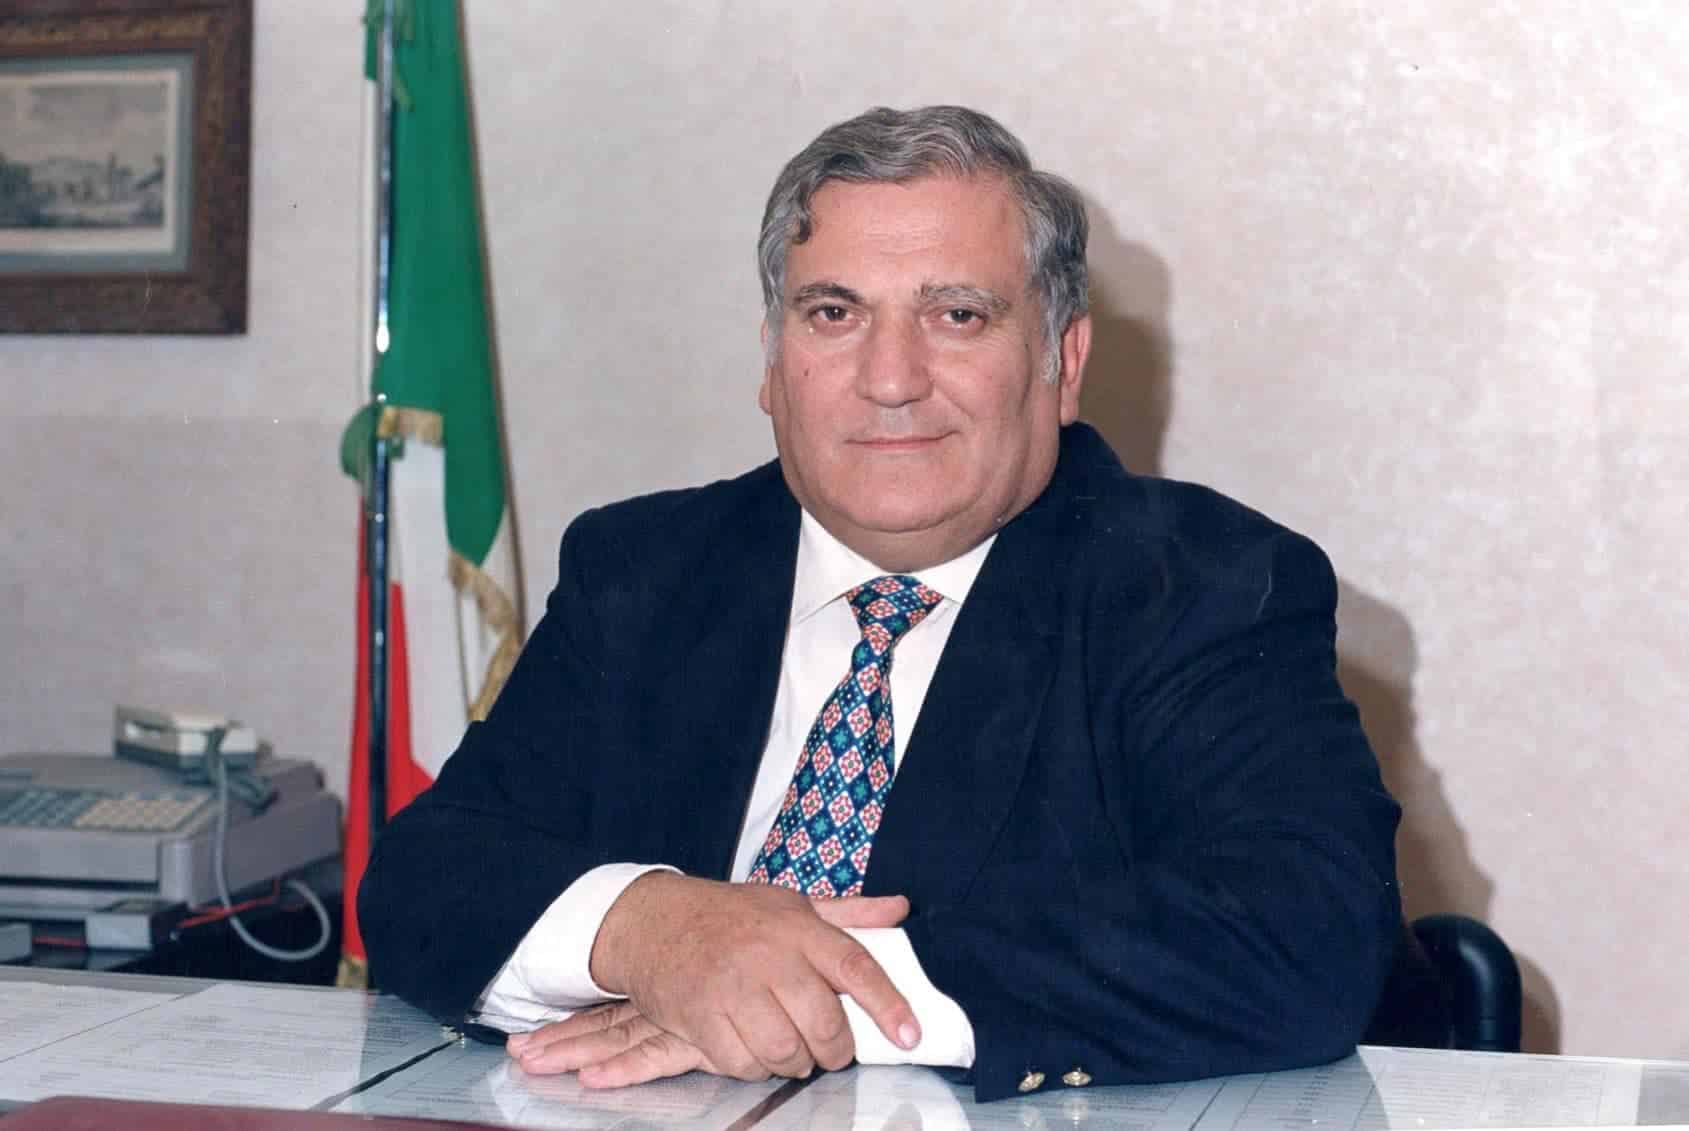 Morto Nino Mannino, figura storica del Partito Comunista Italiano in Sicilia